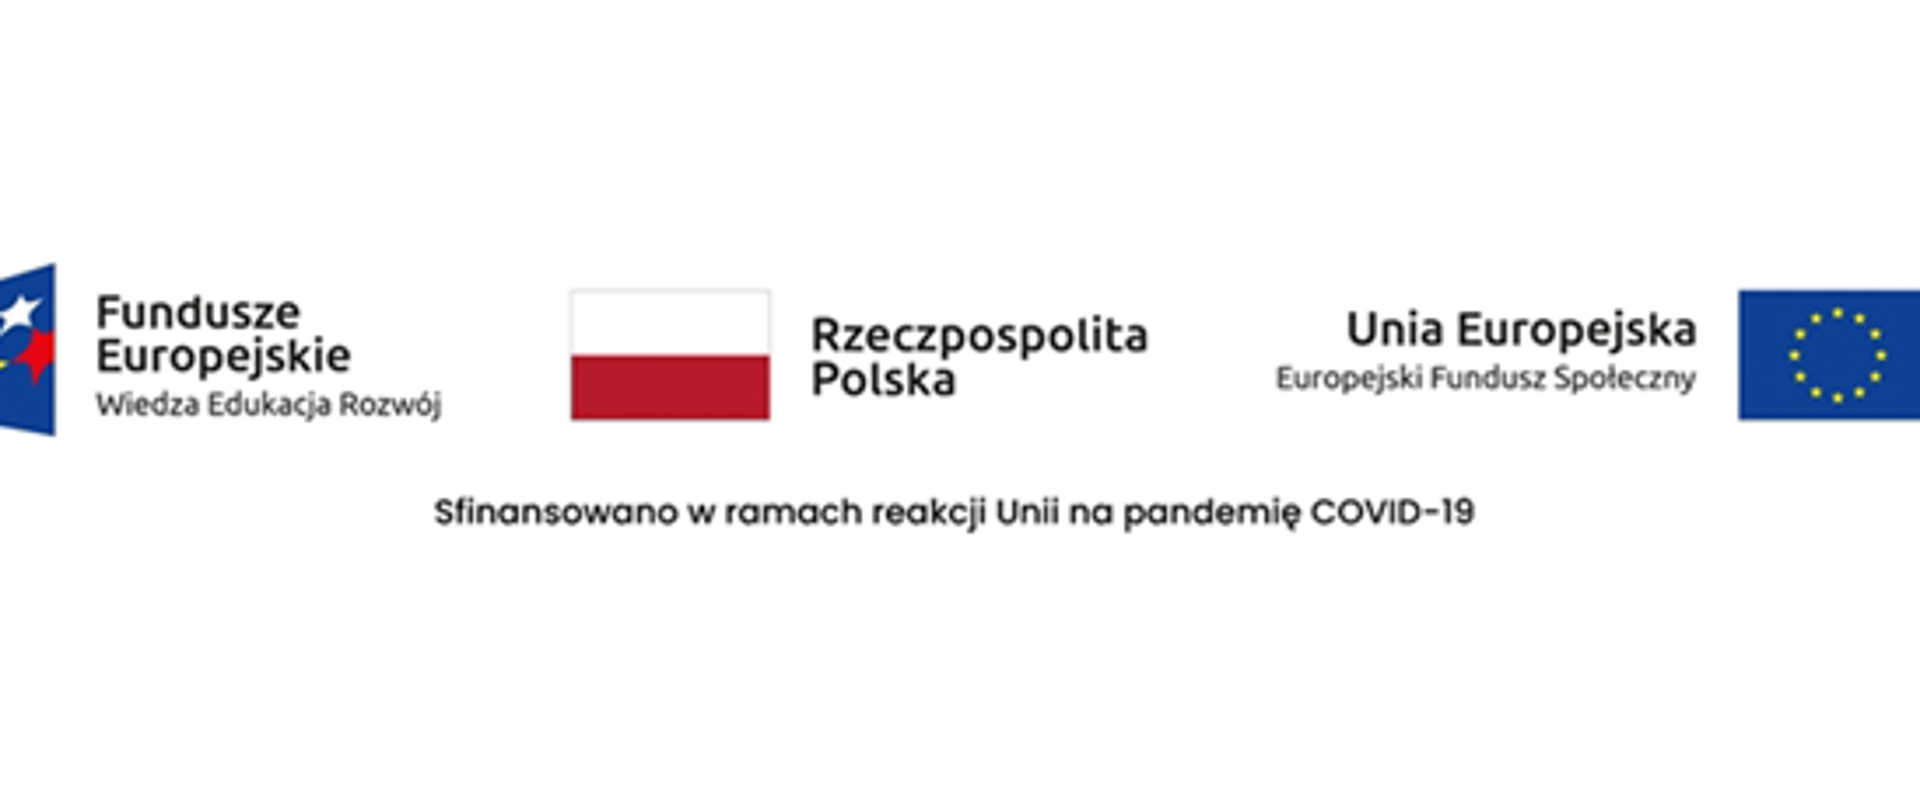 logo_Funduszy_Europejskich,_UE_i_PL_w_ramach_reakcji_Unii_na_COVID-19